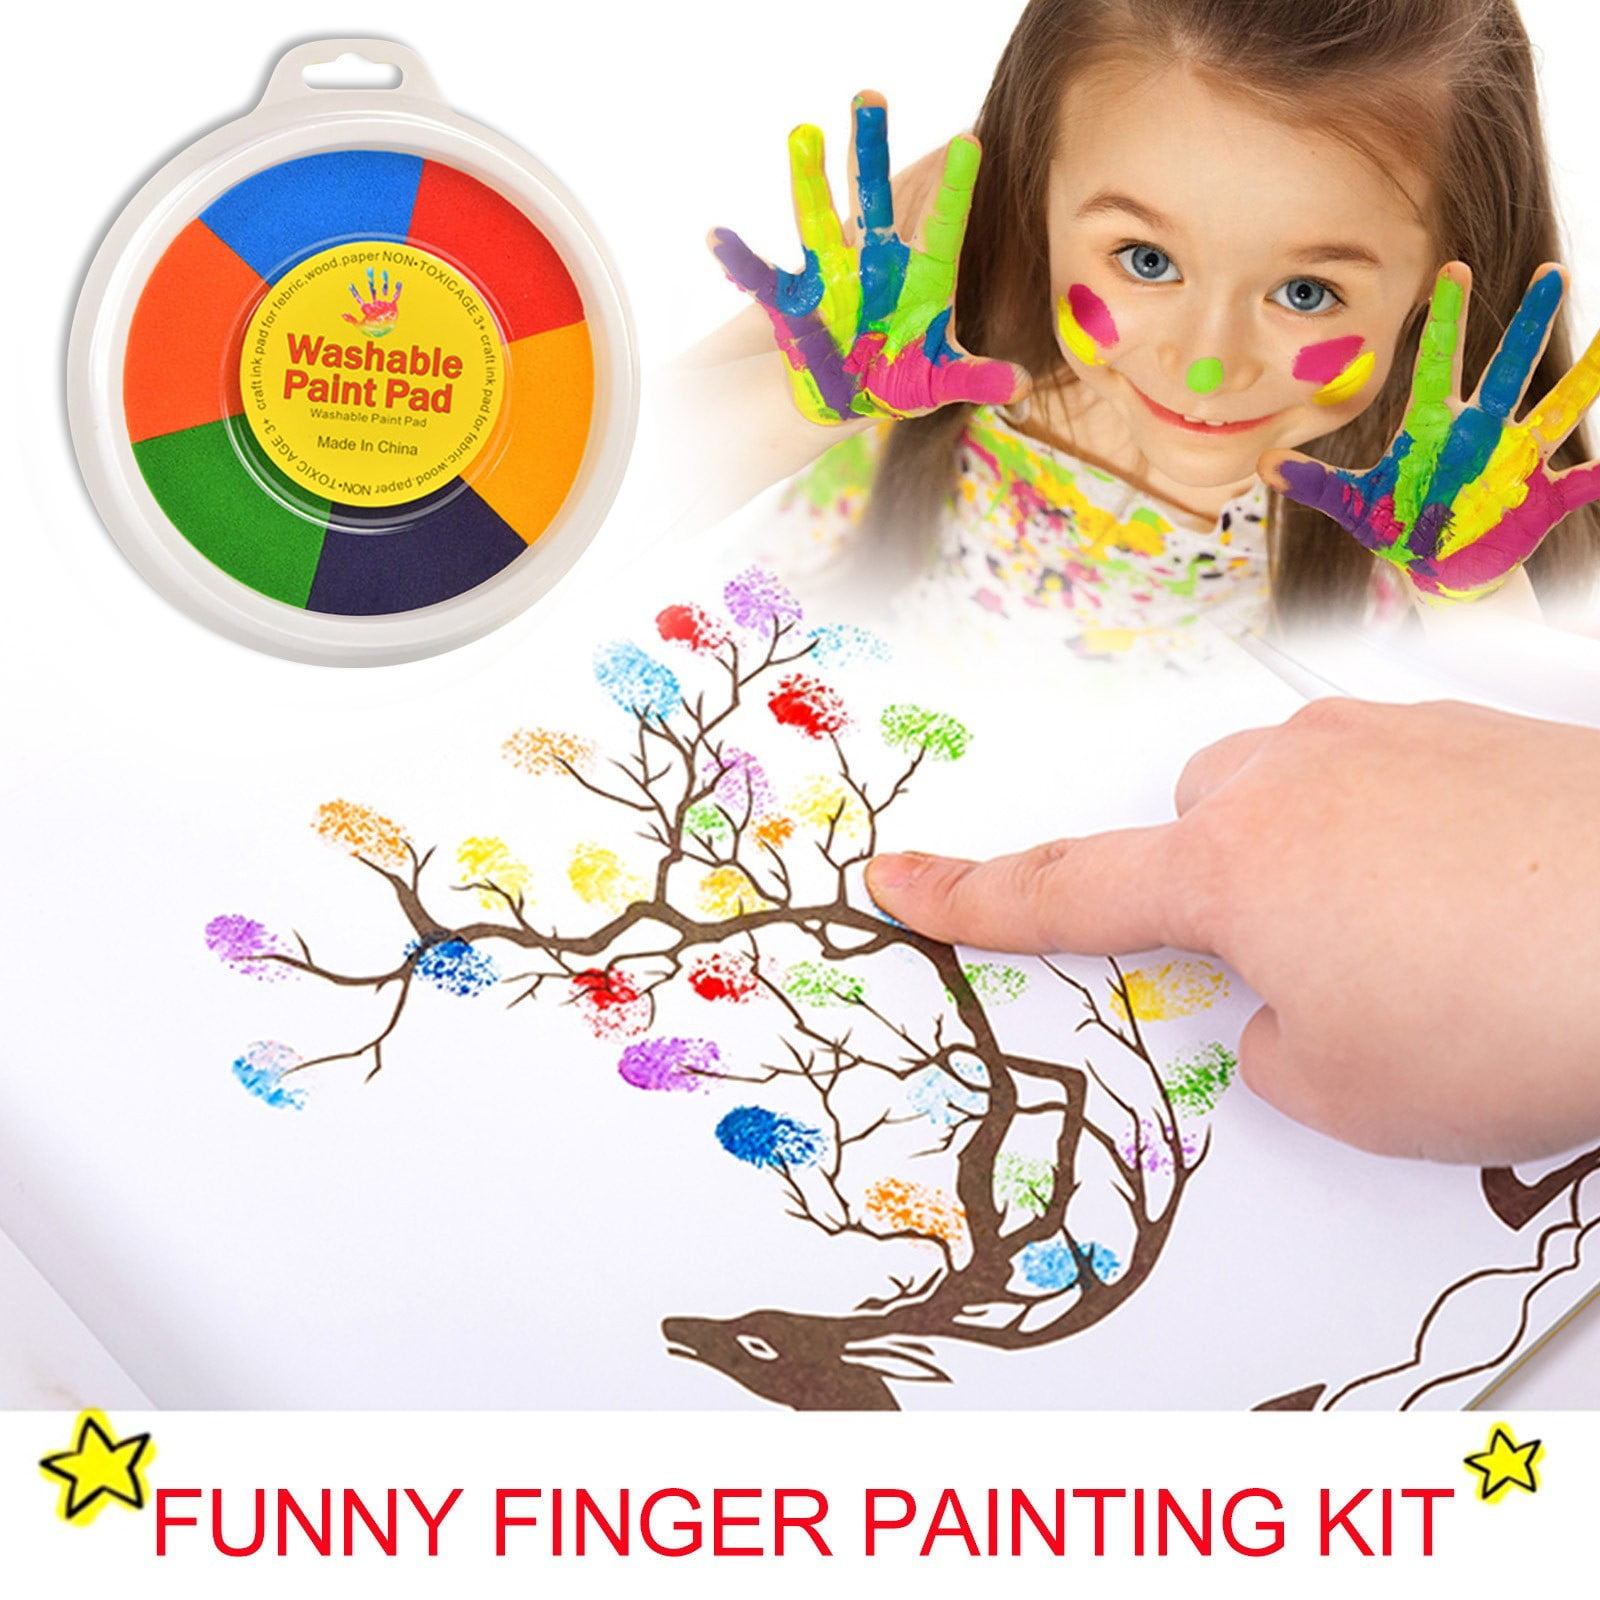 Fantastory Tempera Paint Set 8 Colors (8.4 oz Each) Washable Tempera Paint  for Kids